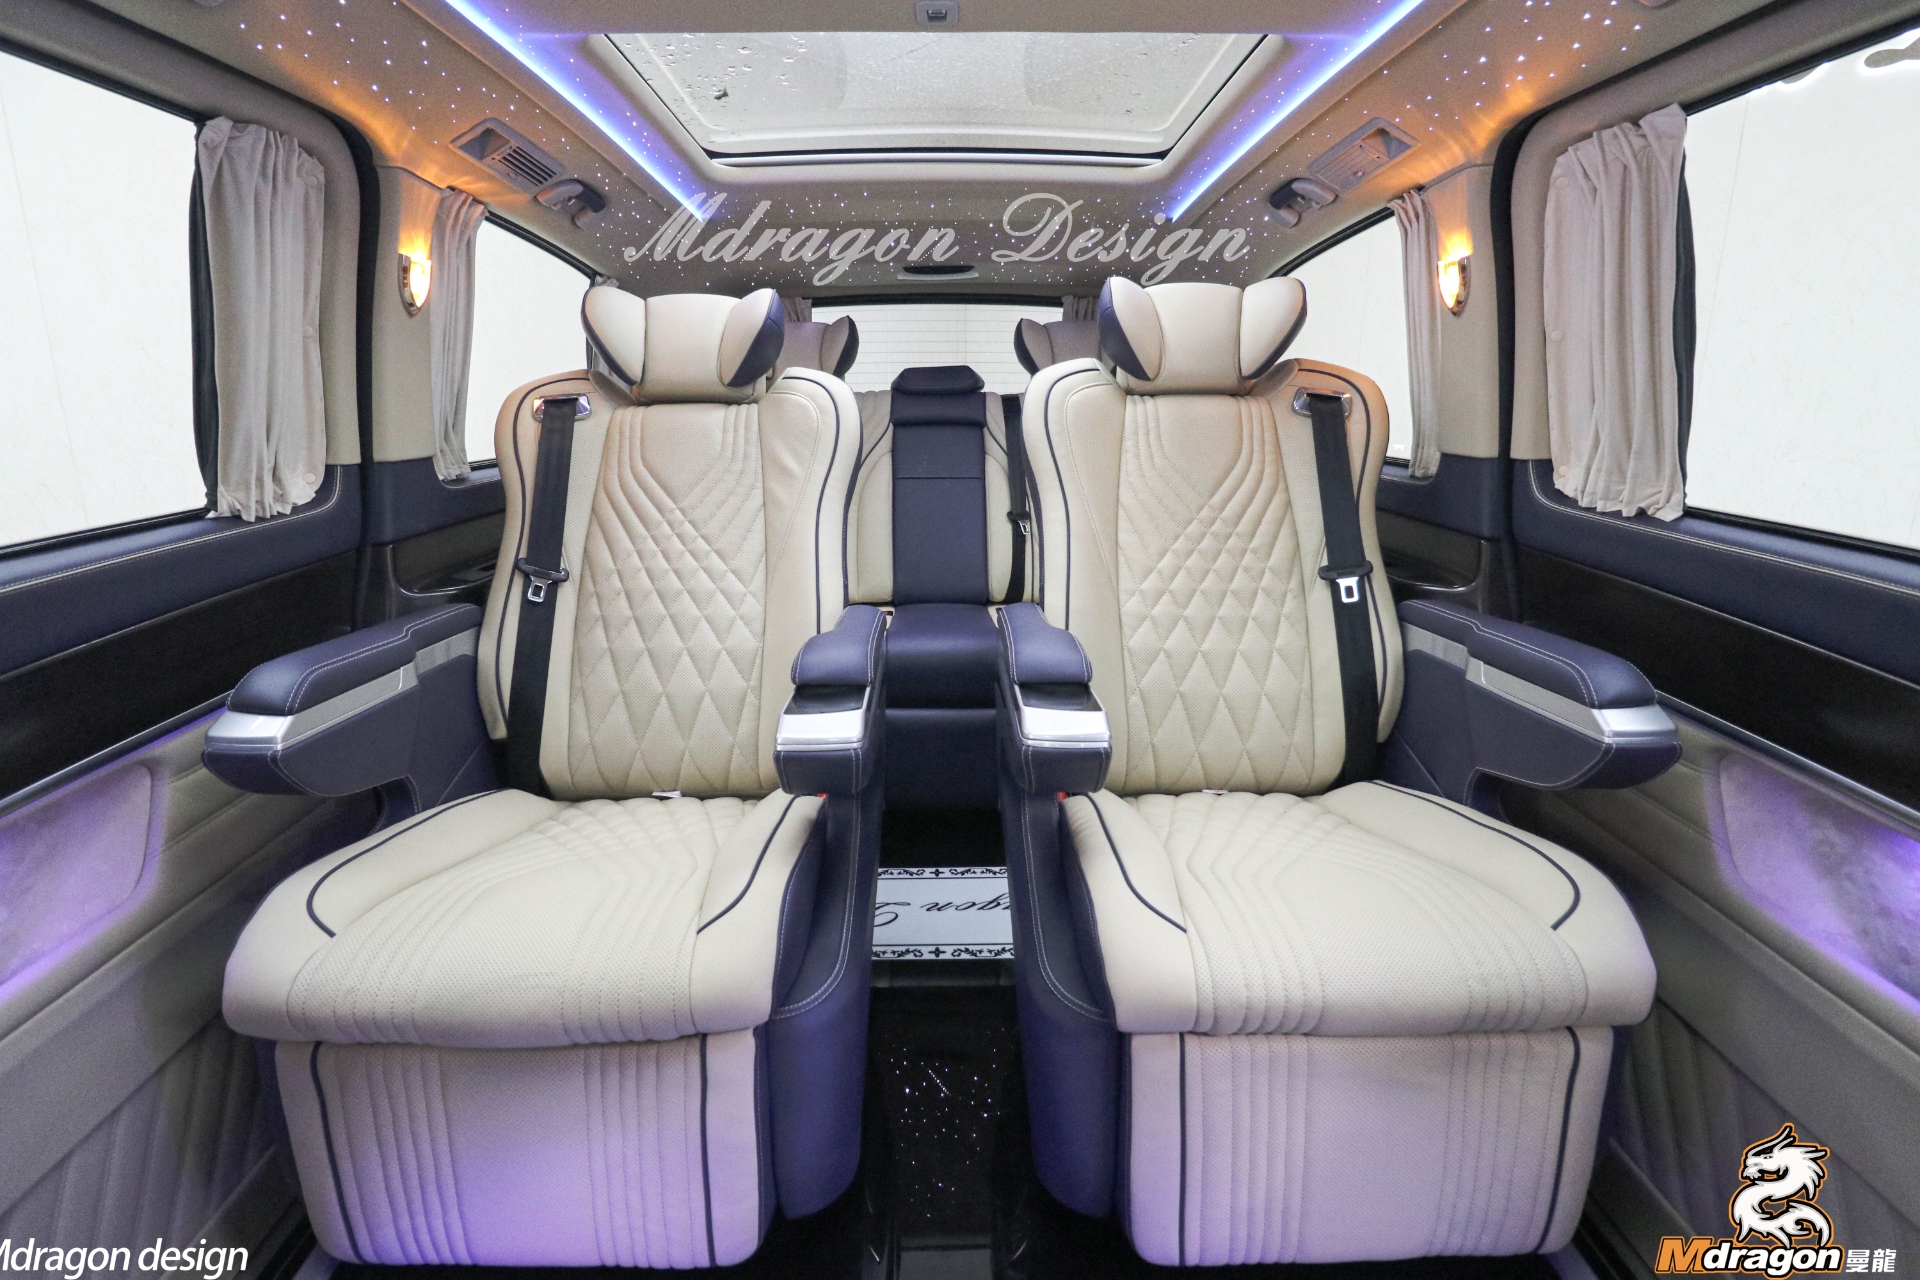 No.382 2015-2018 Benz Vito interior modification